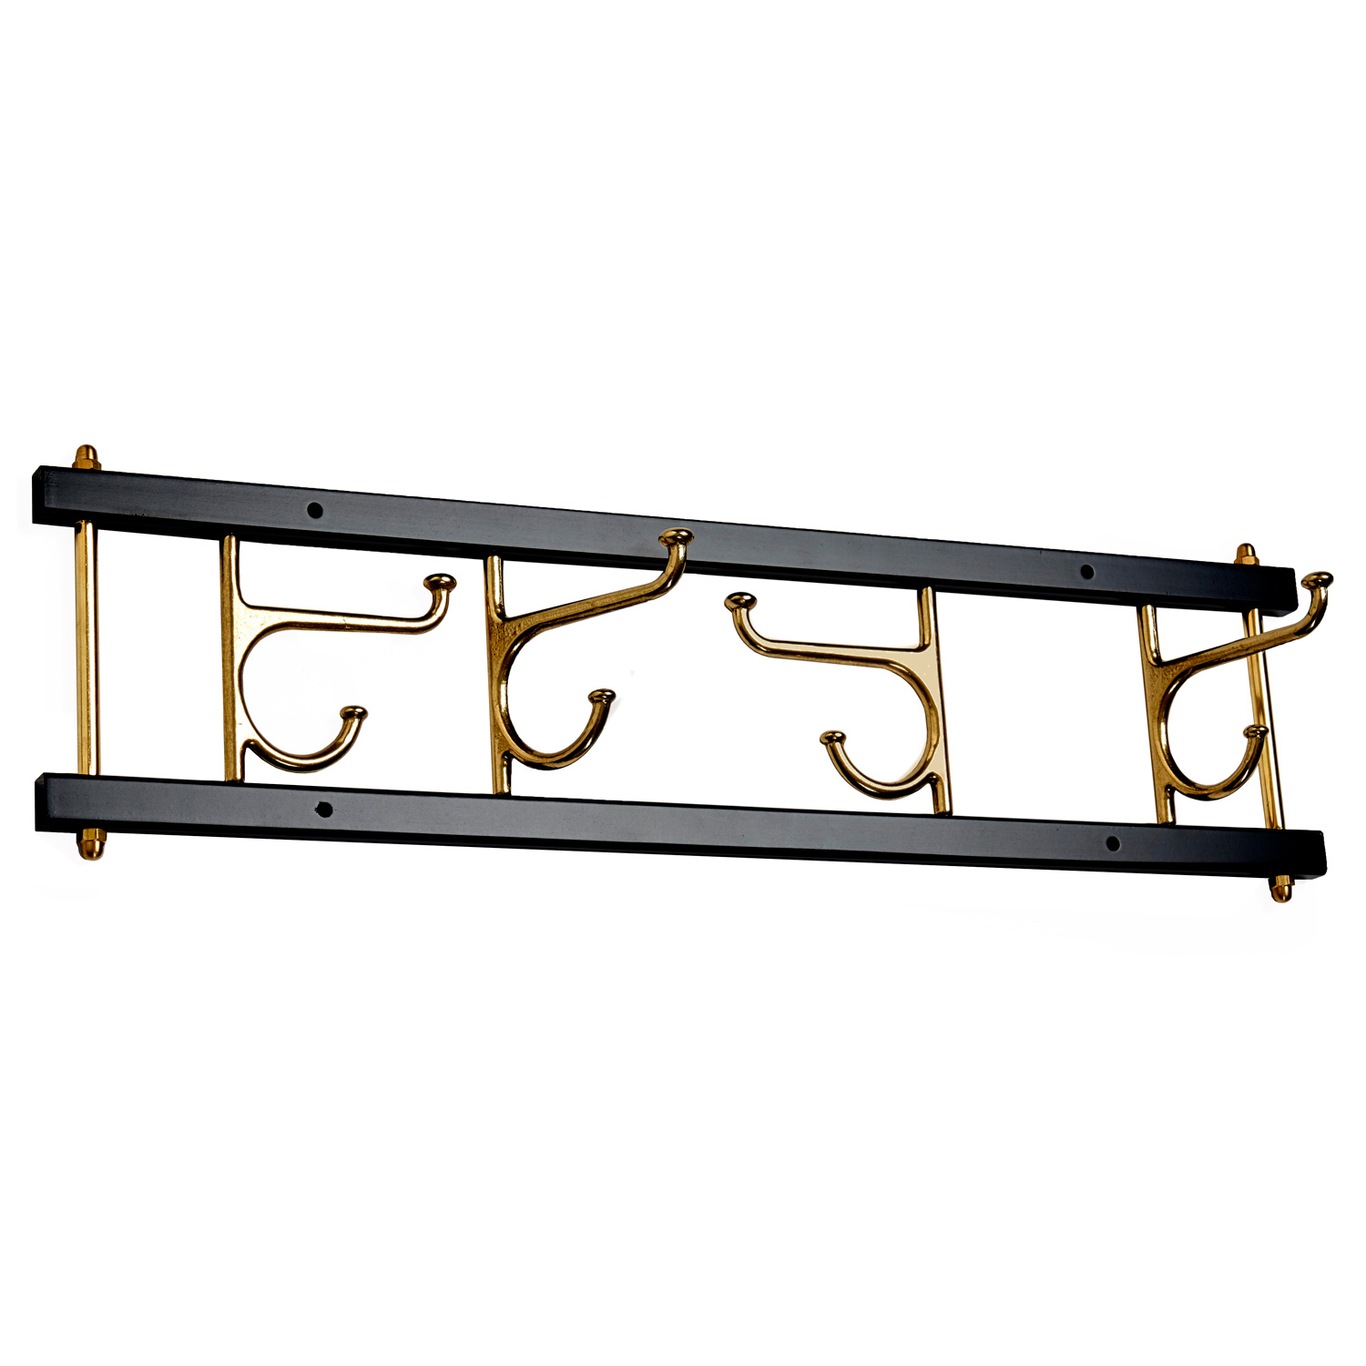 Decorative Hook Rail Maxi 4, Black / Brass